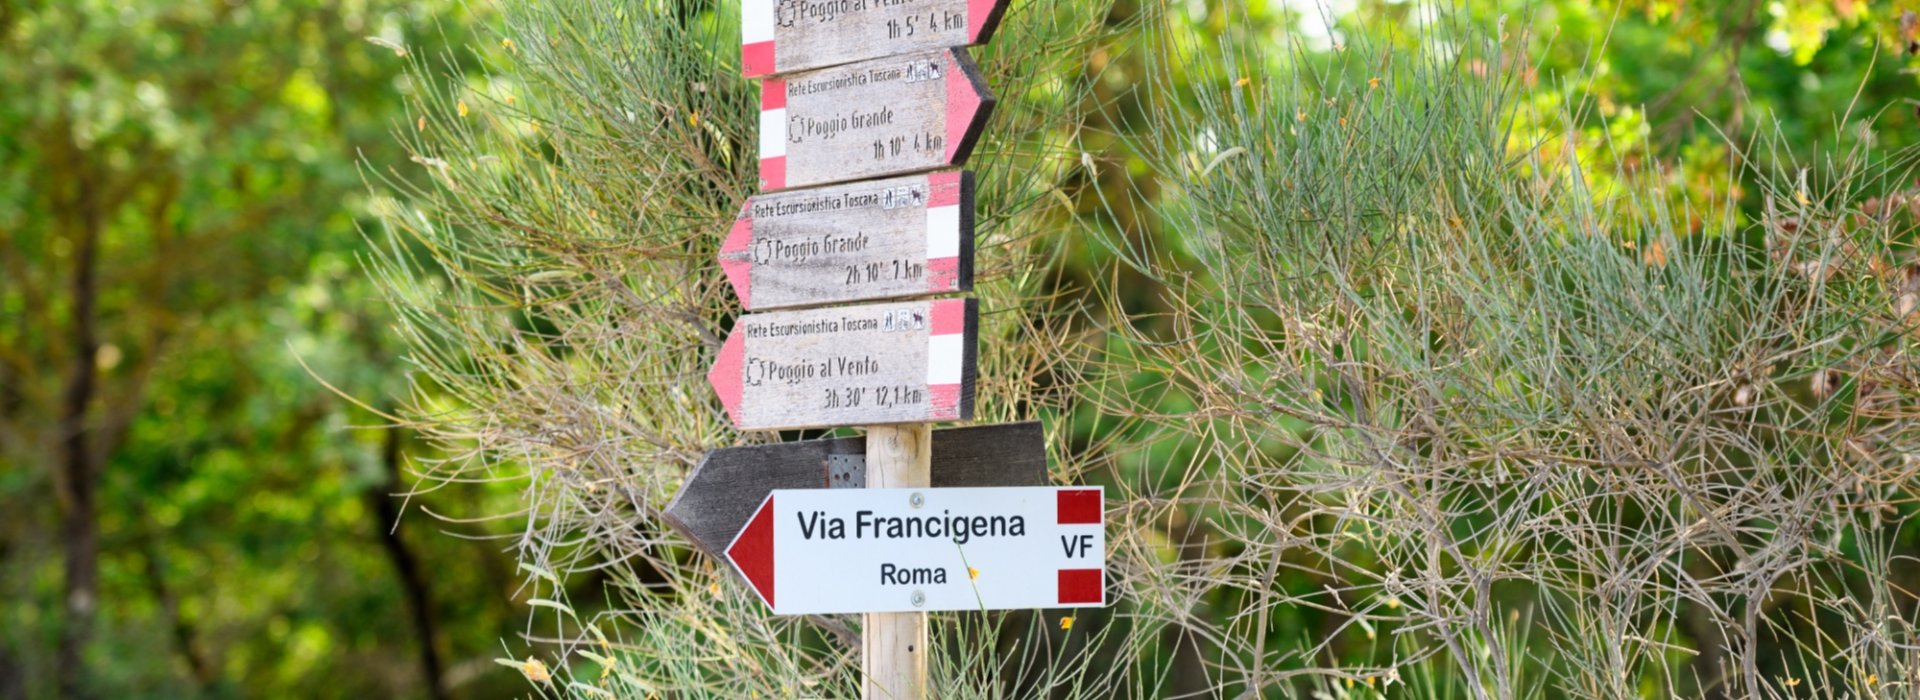 Trekking along the Via Francigena between San Quirico d'Orcia and Radicofani